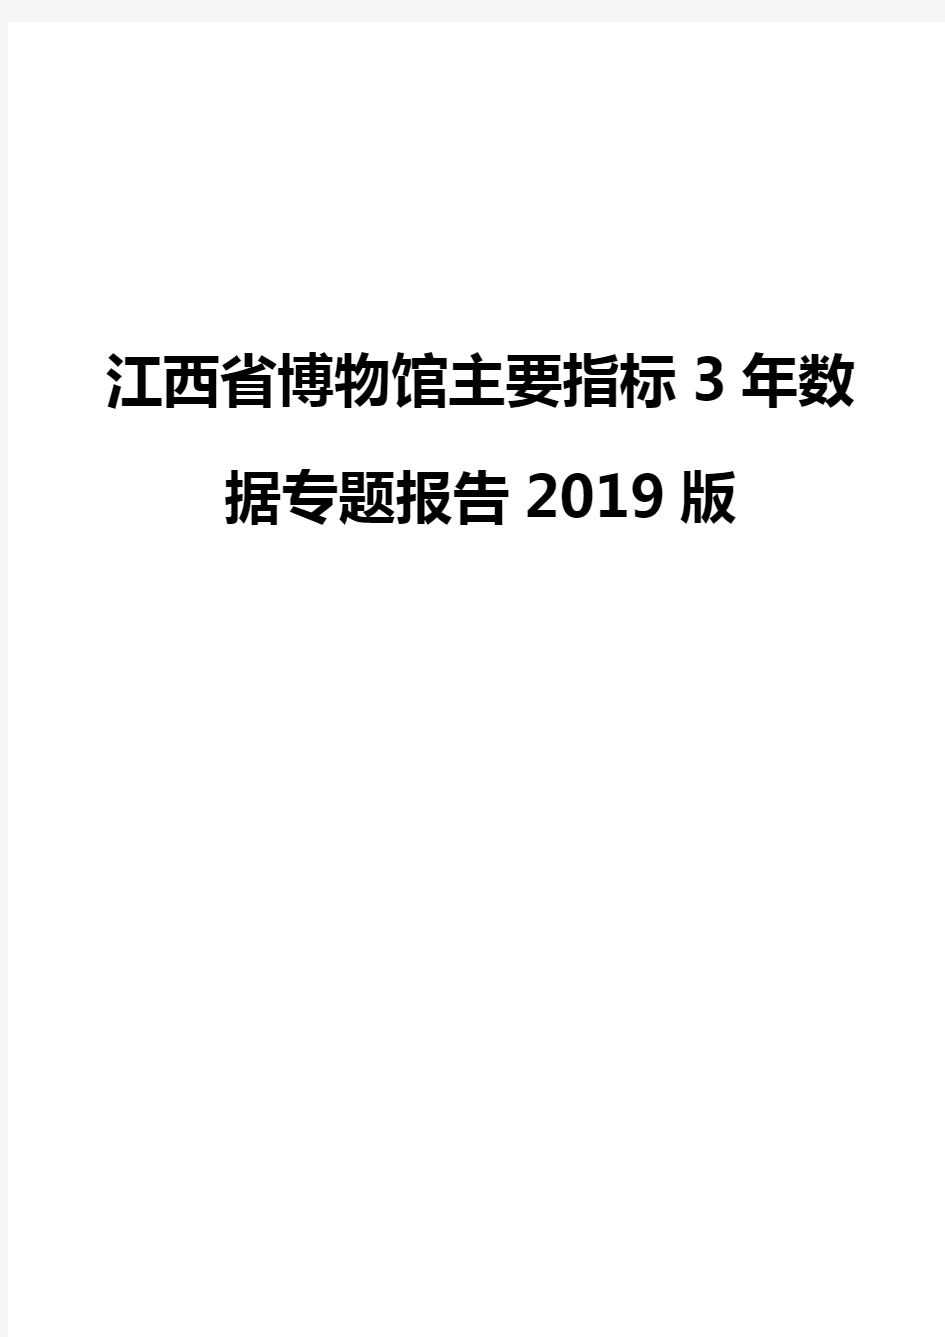 江西省博物馆主要指标3年数据专题报告2019版